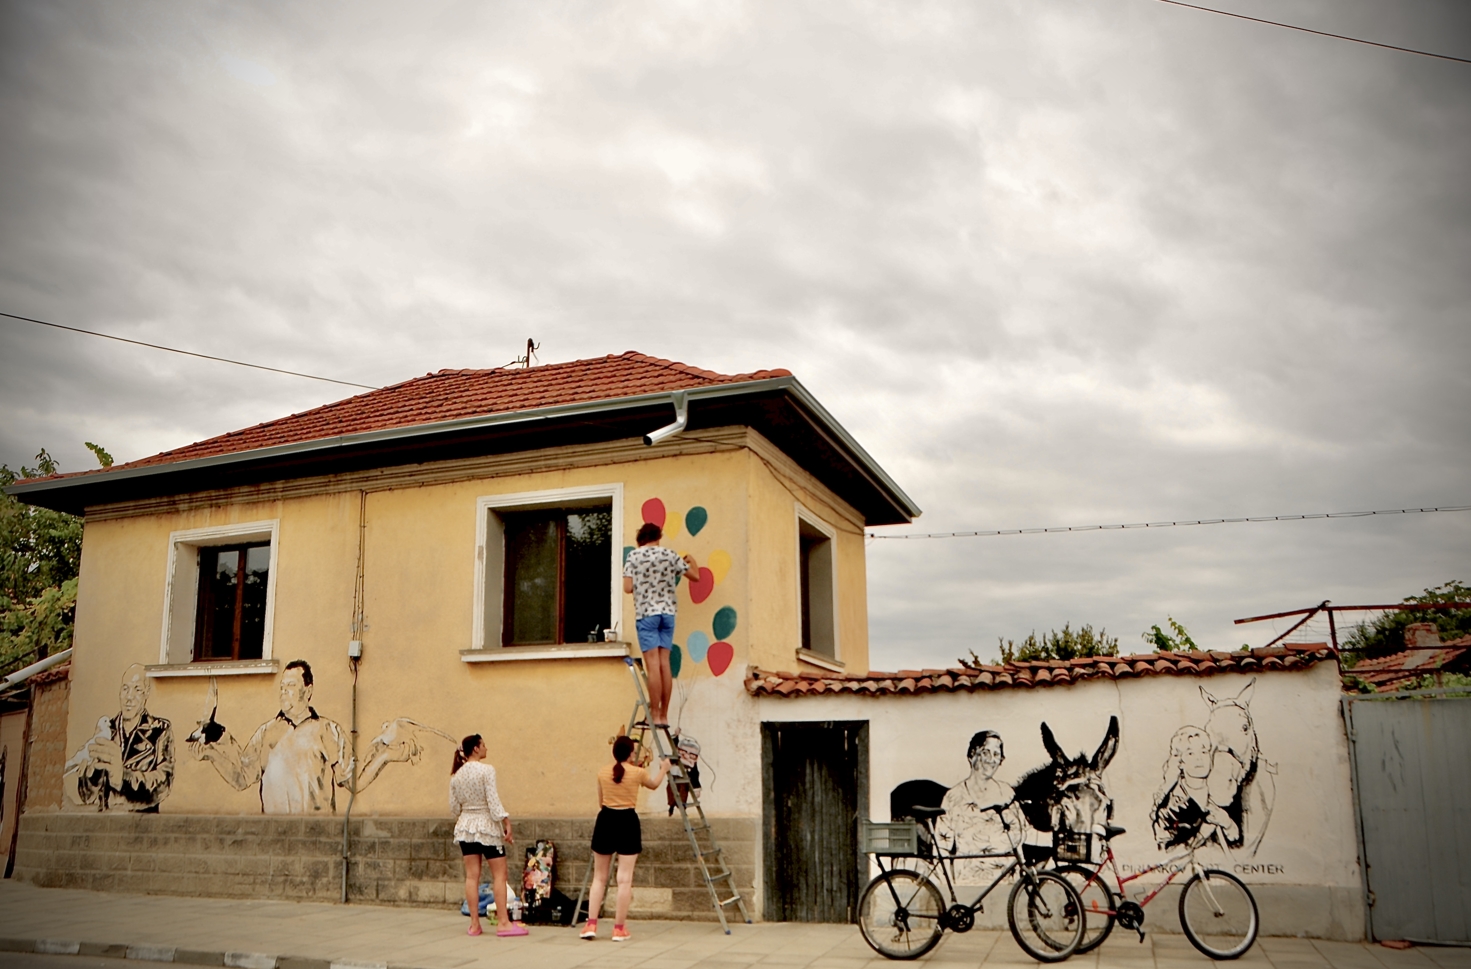 Bulgaristan'ın Staro Jelezare köyünde sanatçılar, her yıl evlerin duvarlarına güncel bir konu seçerek resimler çiziyor.